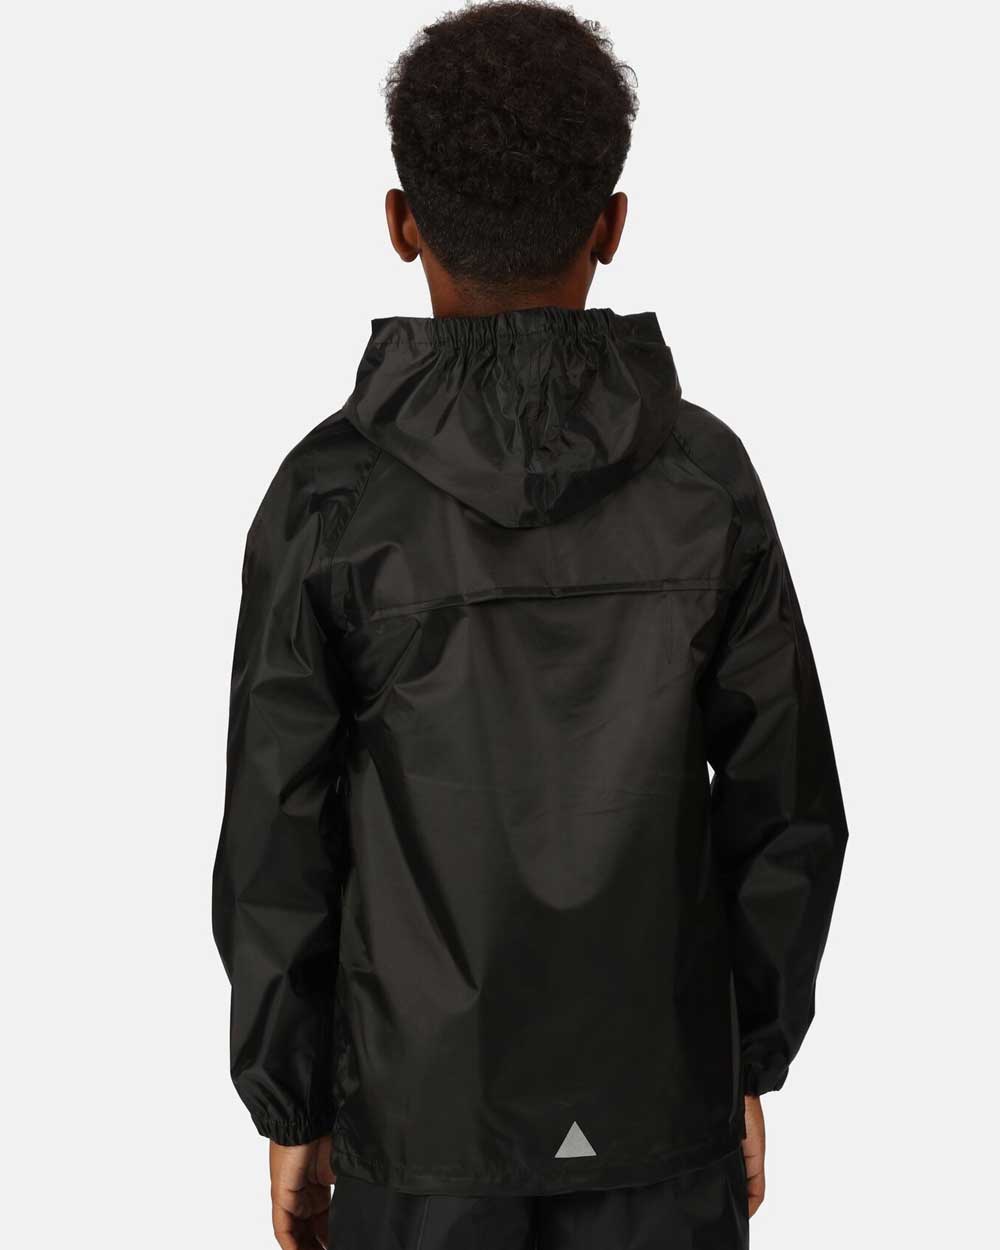 Regatta Kids Pro Stormbreak Waterproof Jacket In Black 